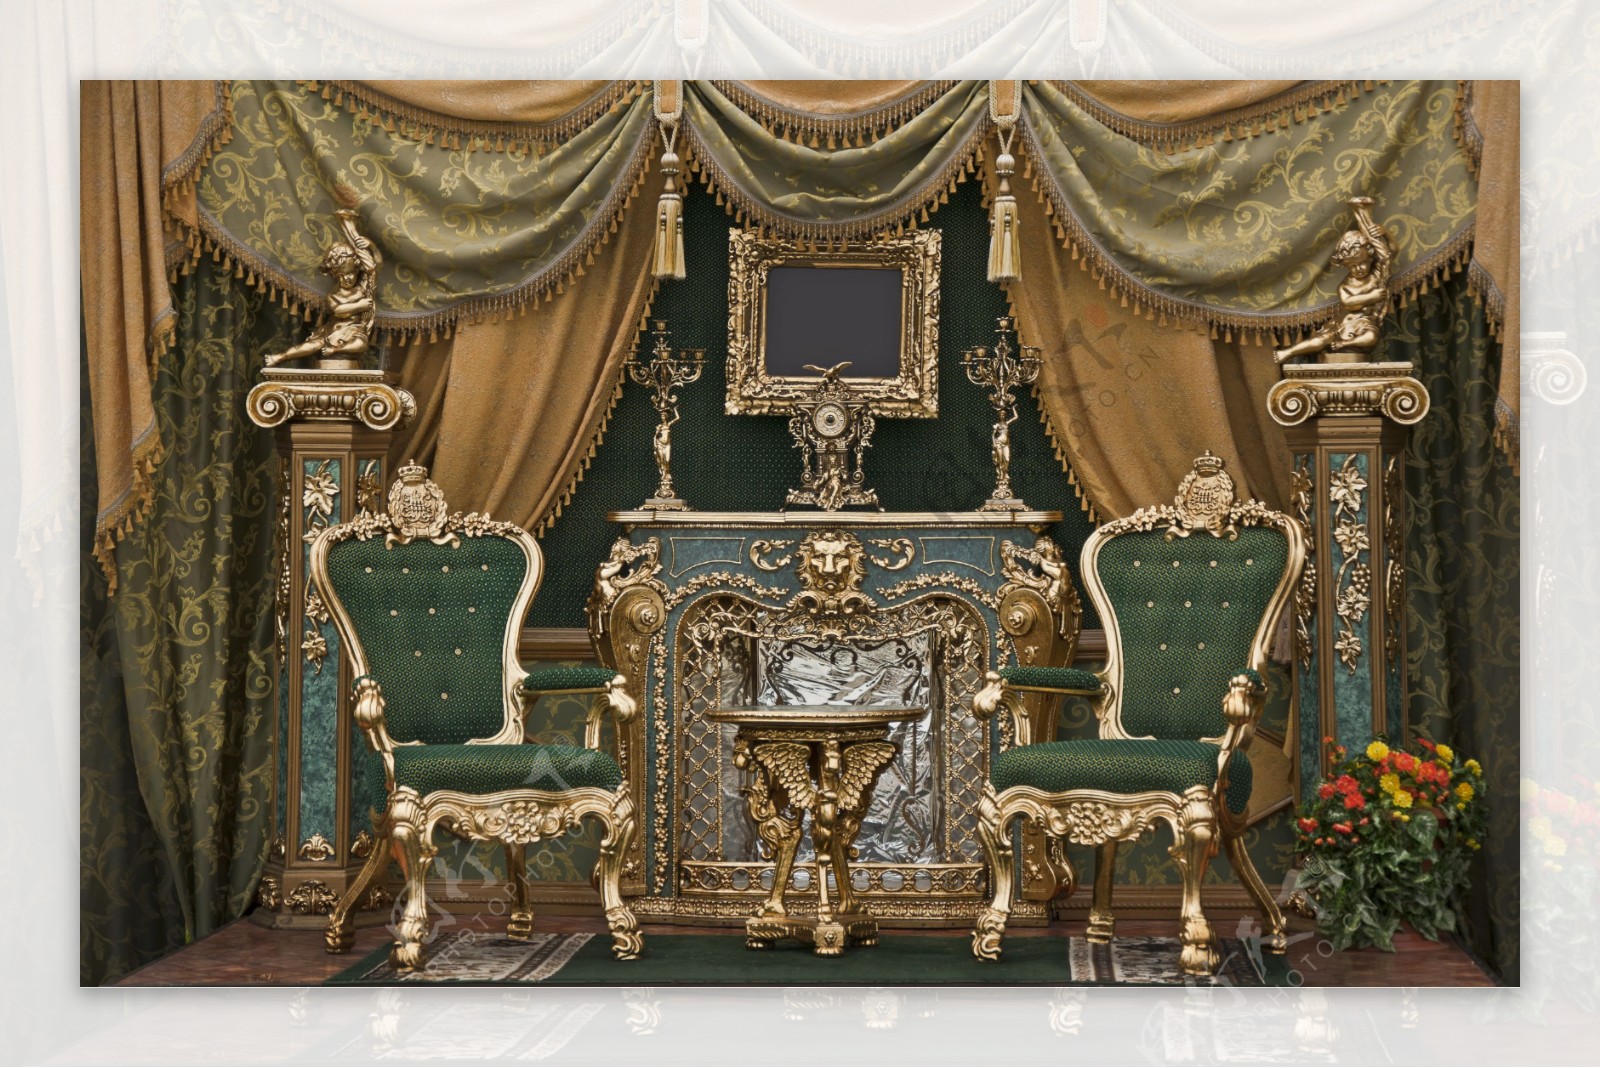 古典欧式家具图片